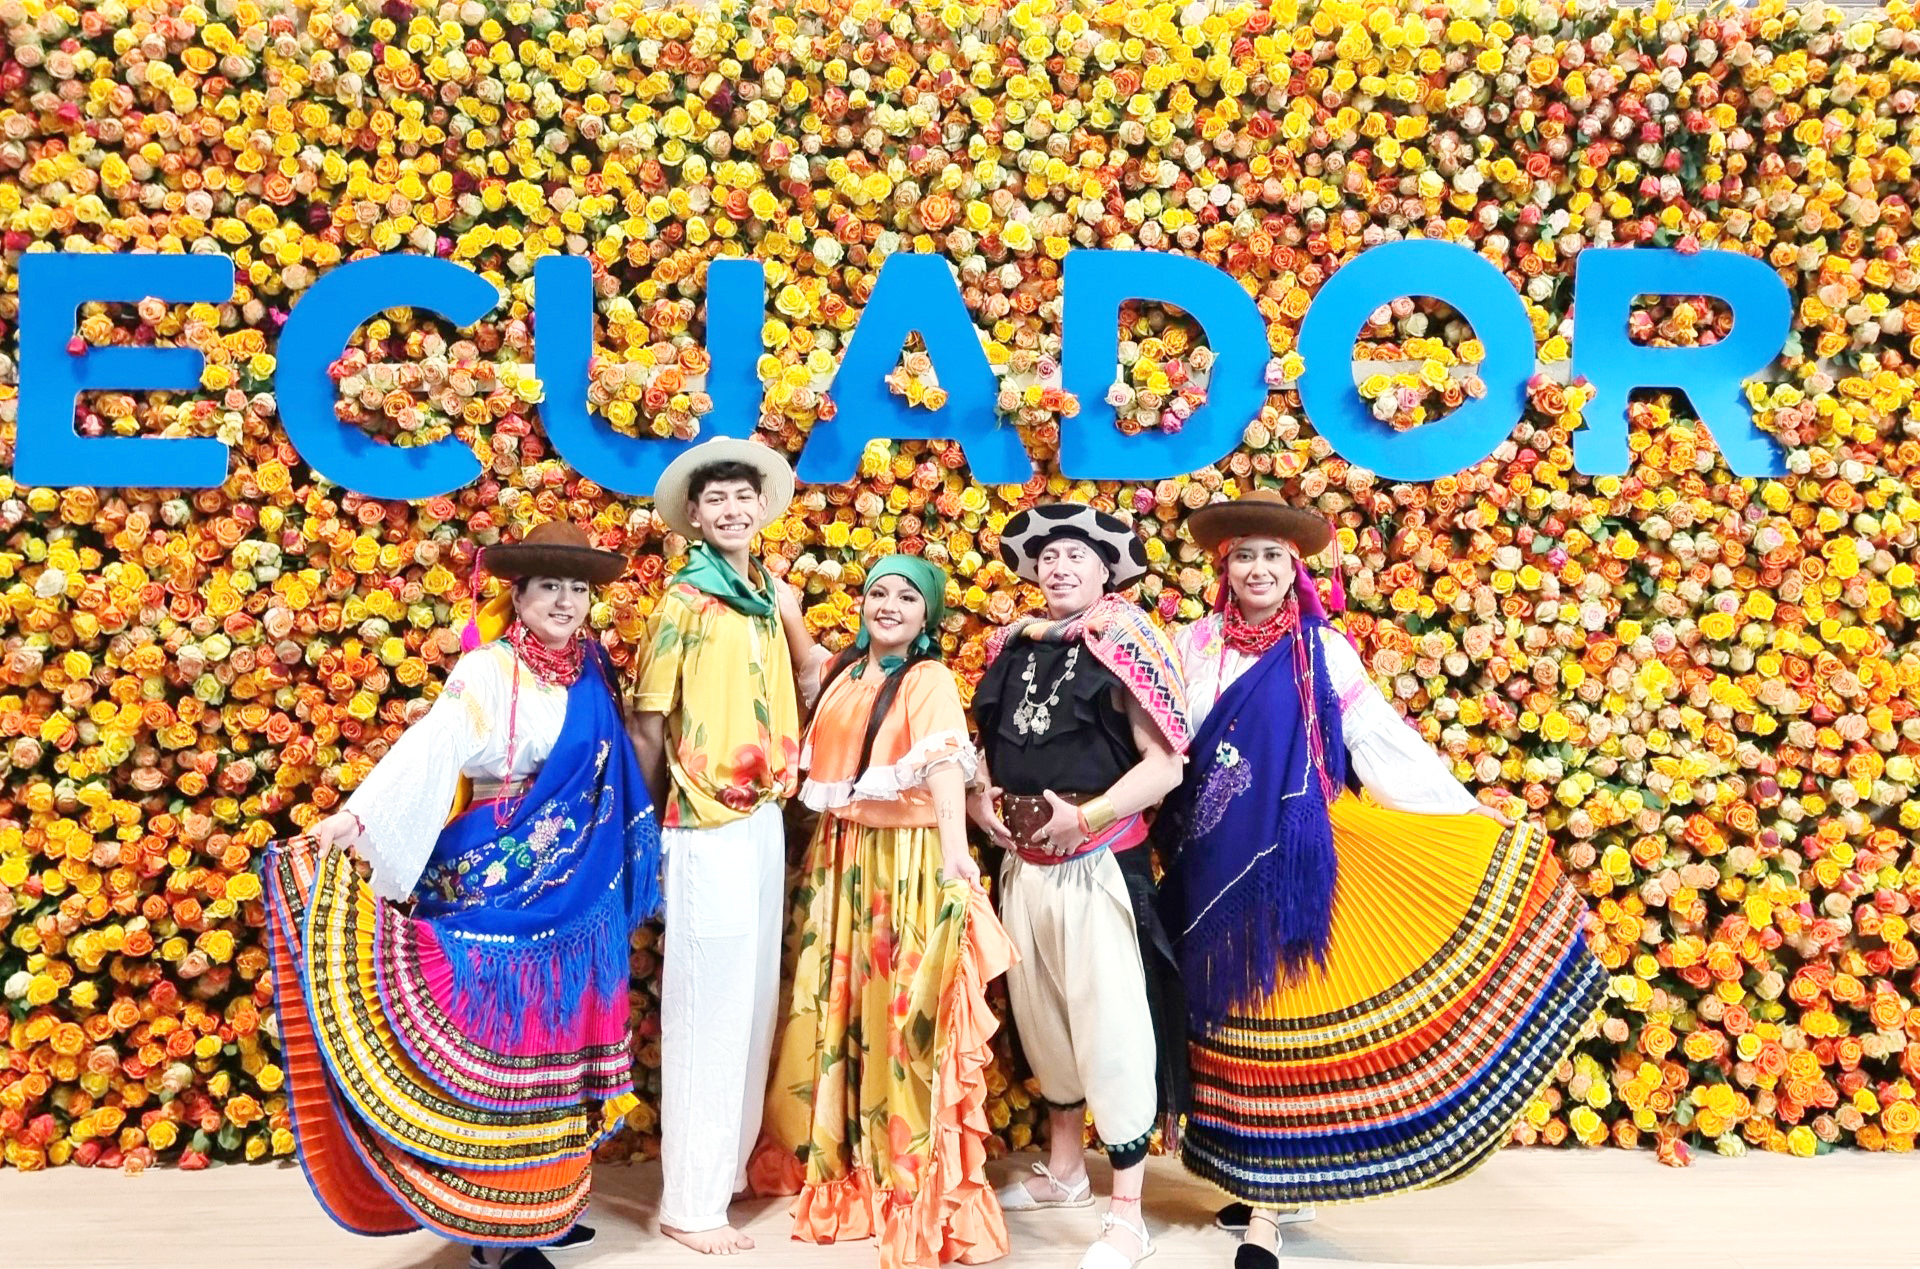 الأزياء التقليدية في الاكوادور